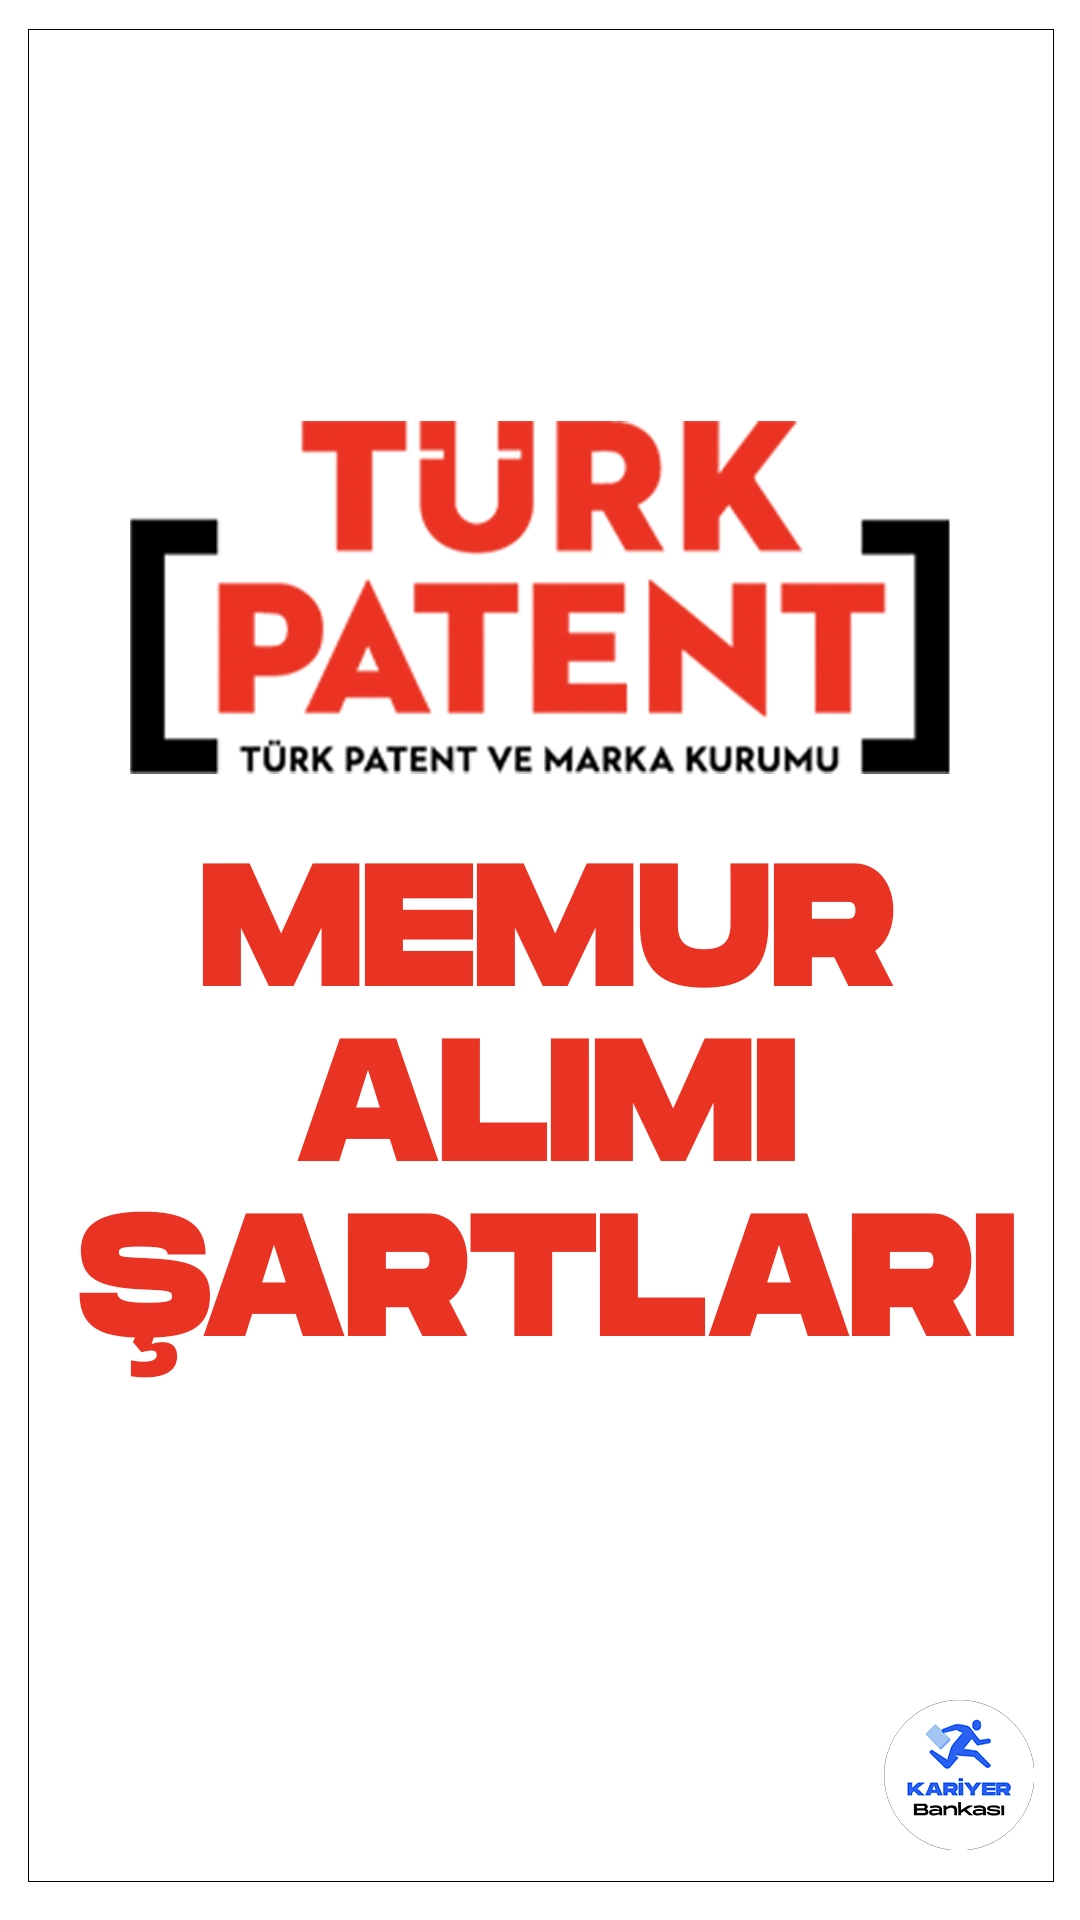 Türk Patent ve Marka Kurumu memur alımı başvuruları devam ediyor. Başvuru şartları ve başvuru sayfasına dair tüm detaylar Kariyerbankasi.net'in bu haberinde.